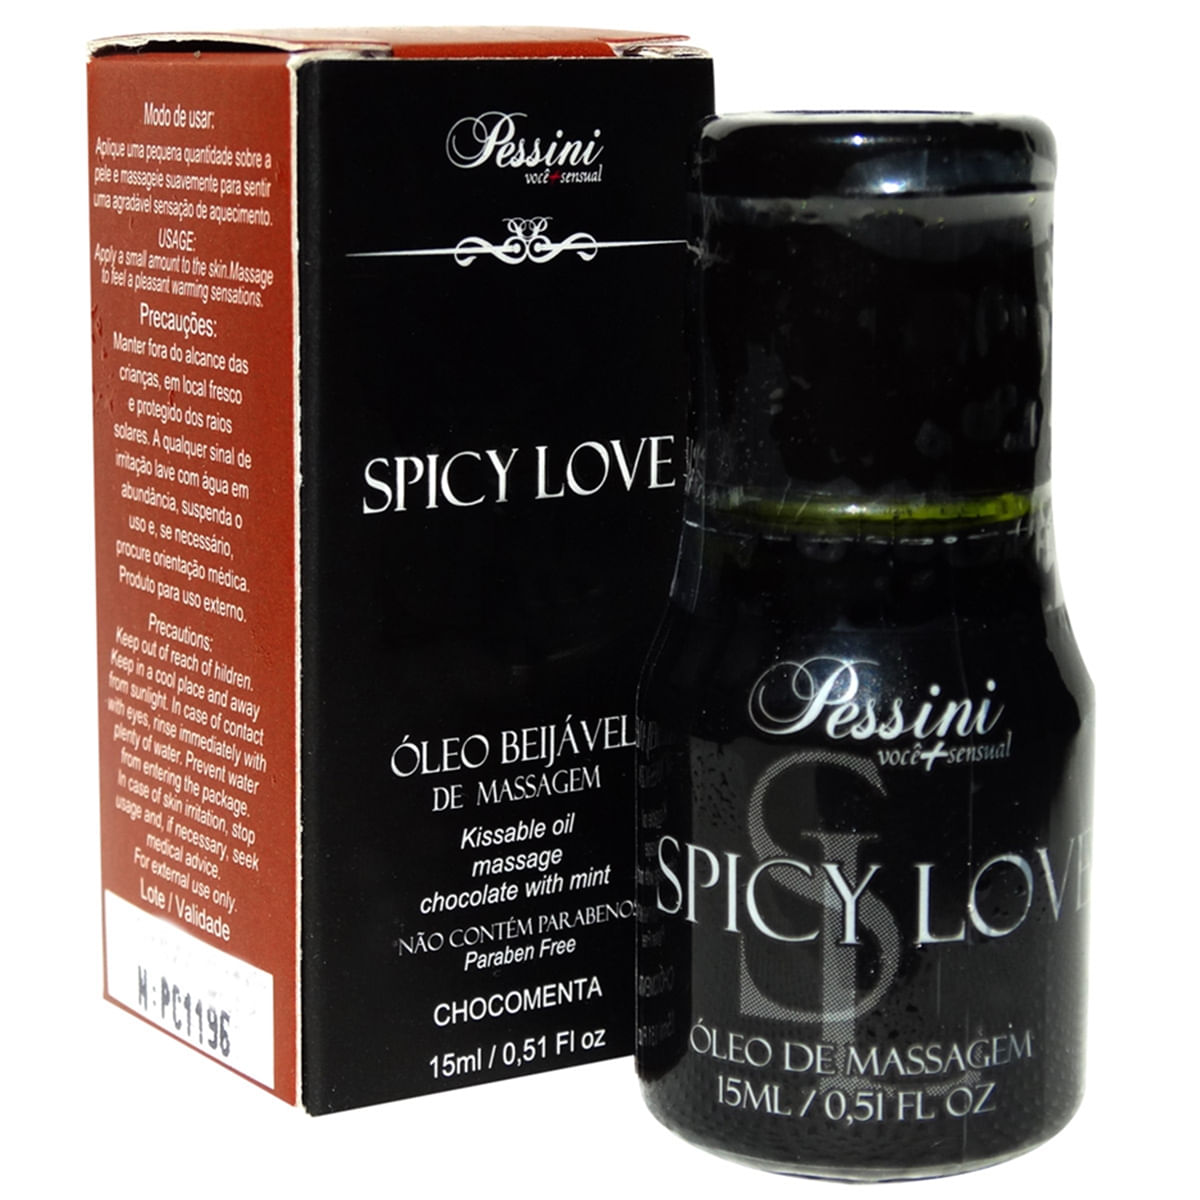 Spicy Love Chocomenta 15ml Pessini